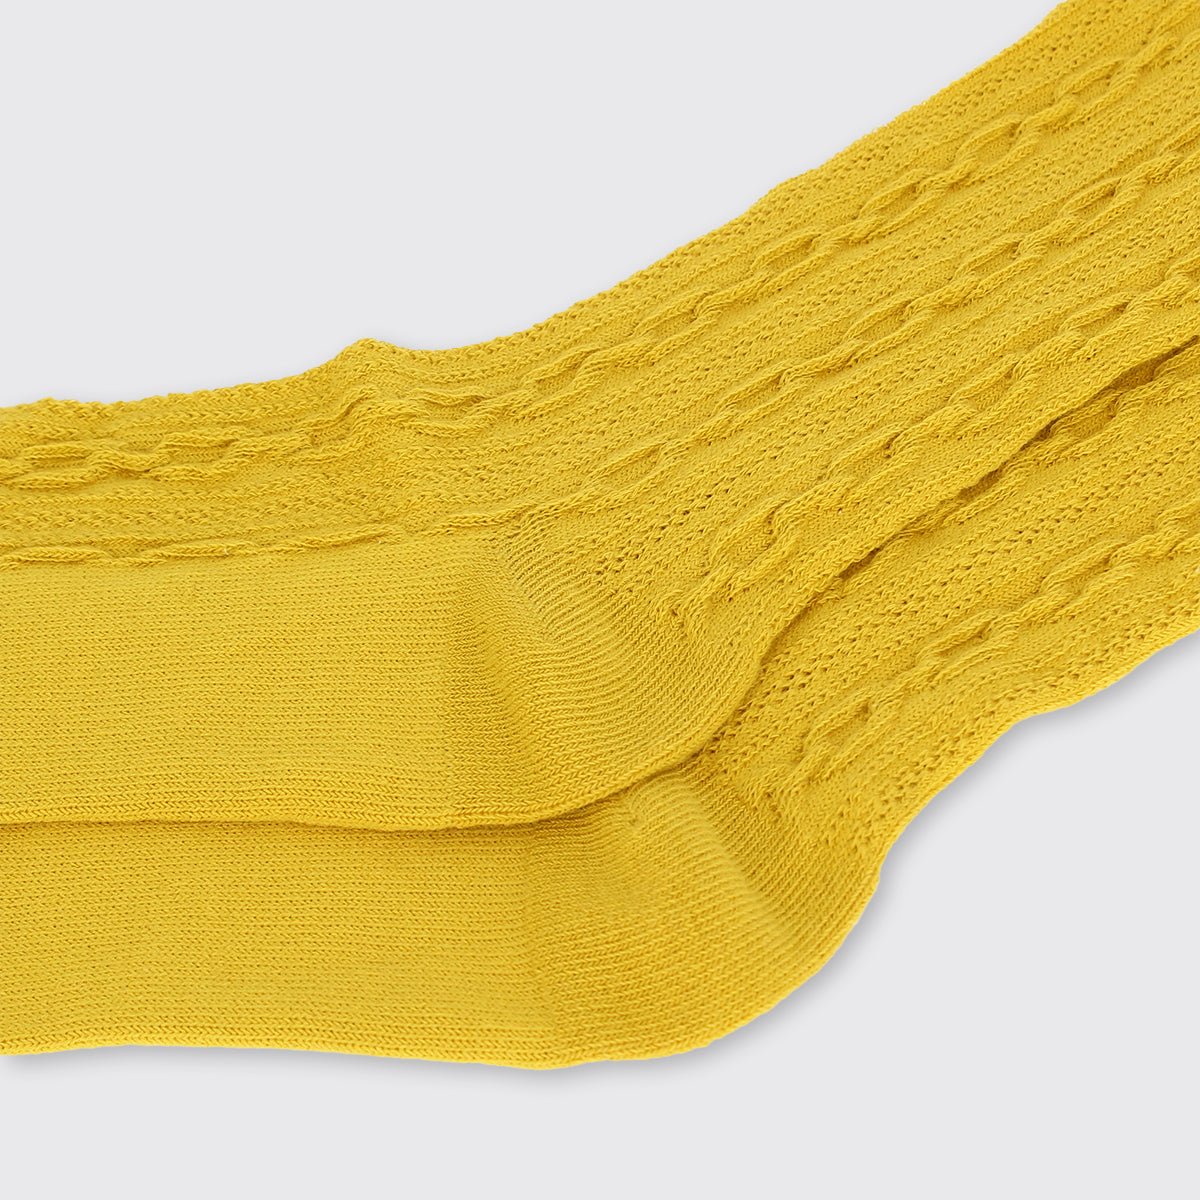 Knee socks in lilac on ocher yellow